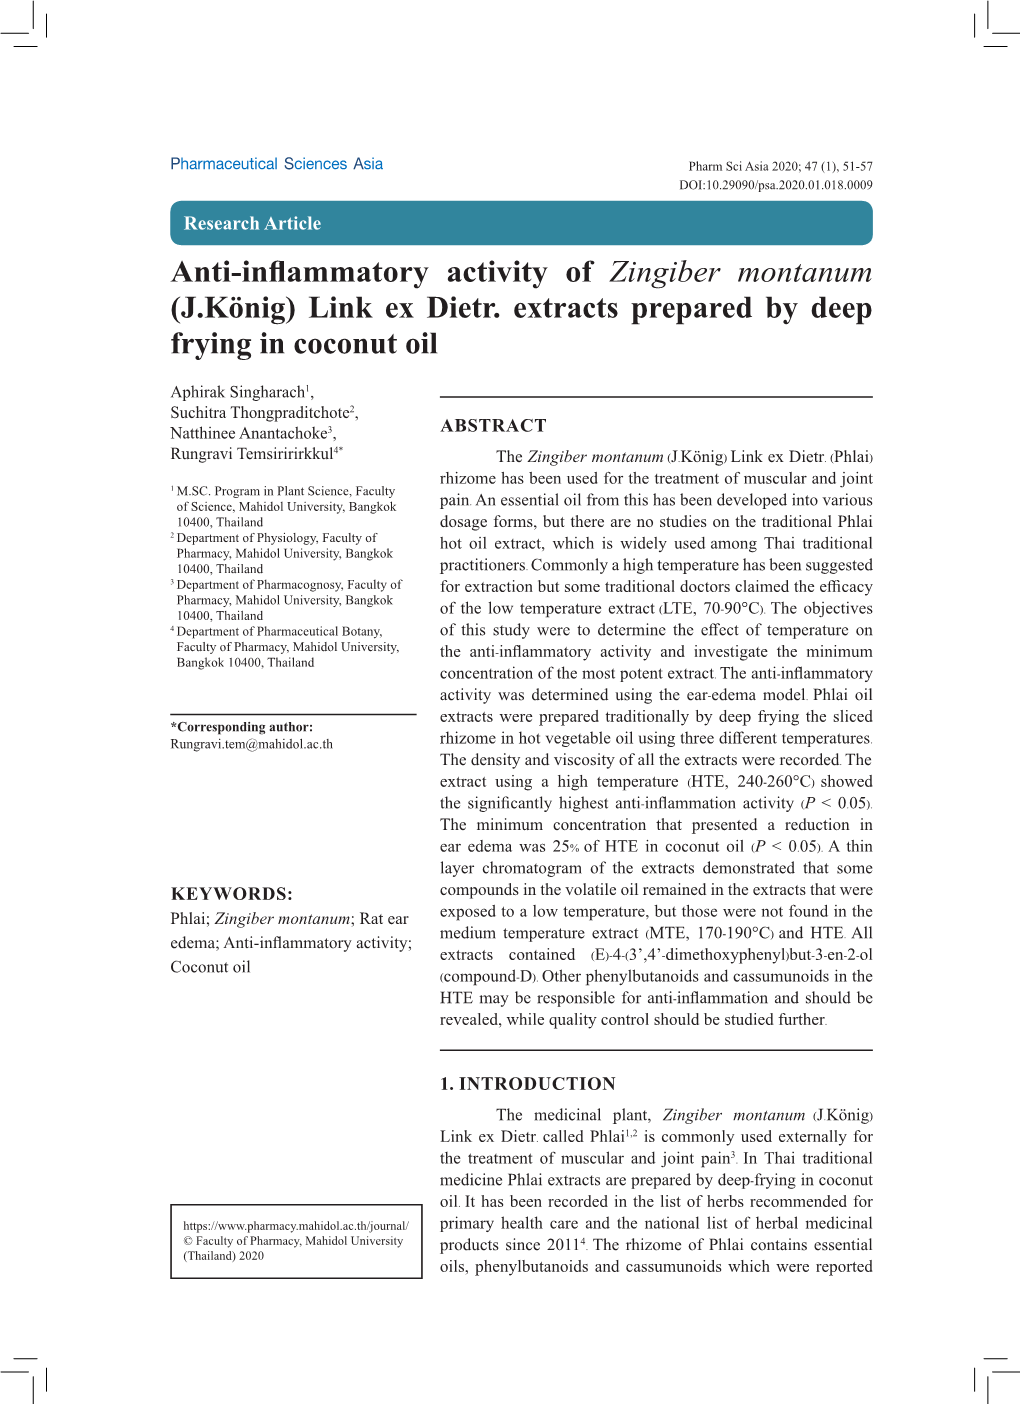 Anti-Inflammatory Activity of Zingiber Montanum (J.König) Link Ex Dietr